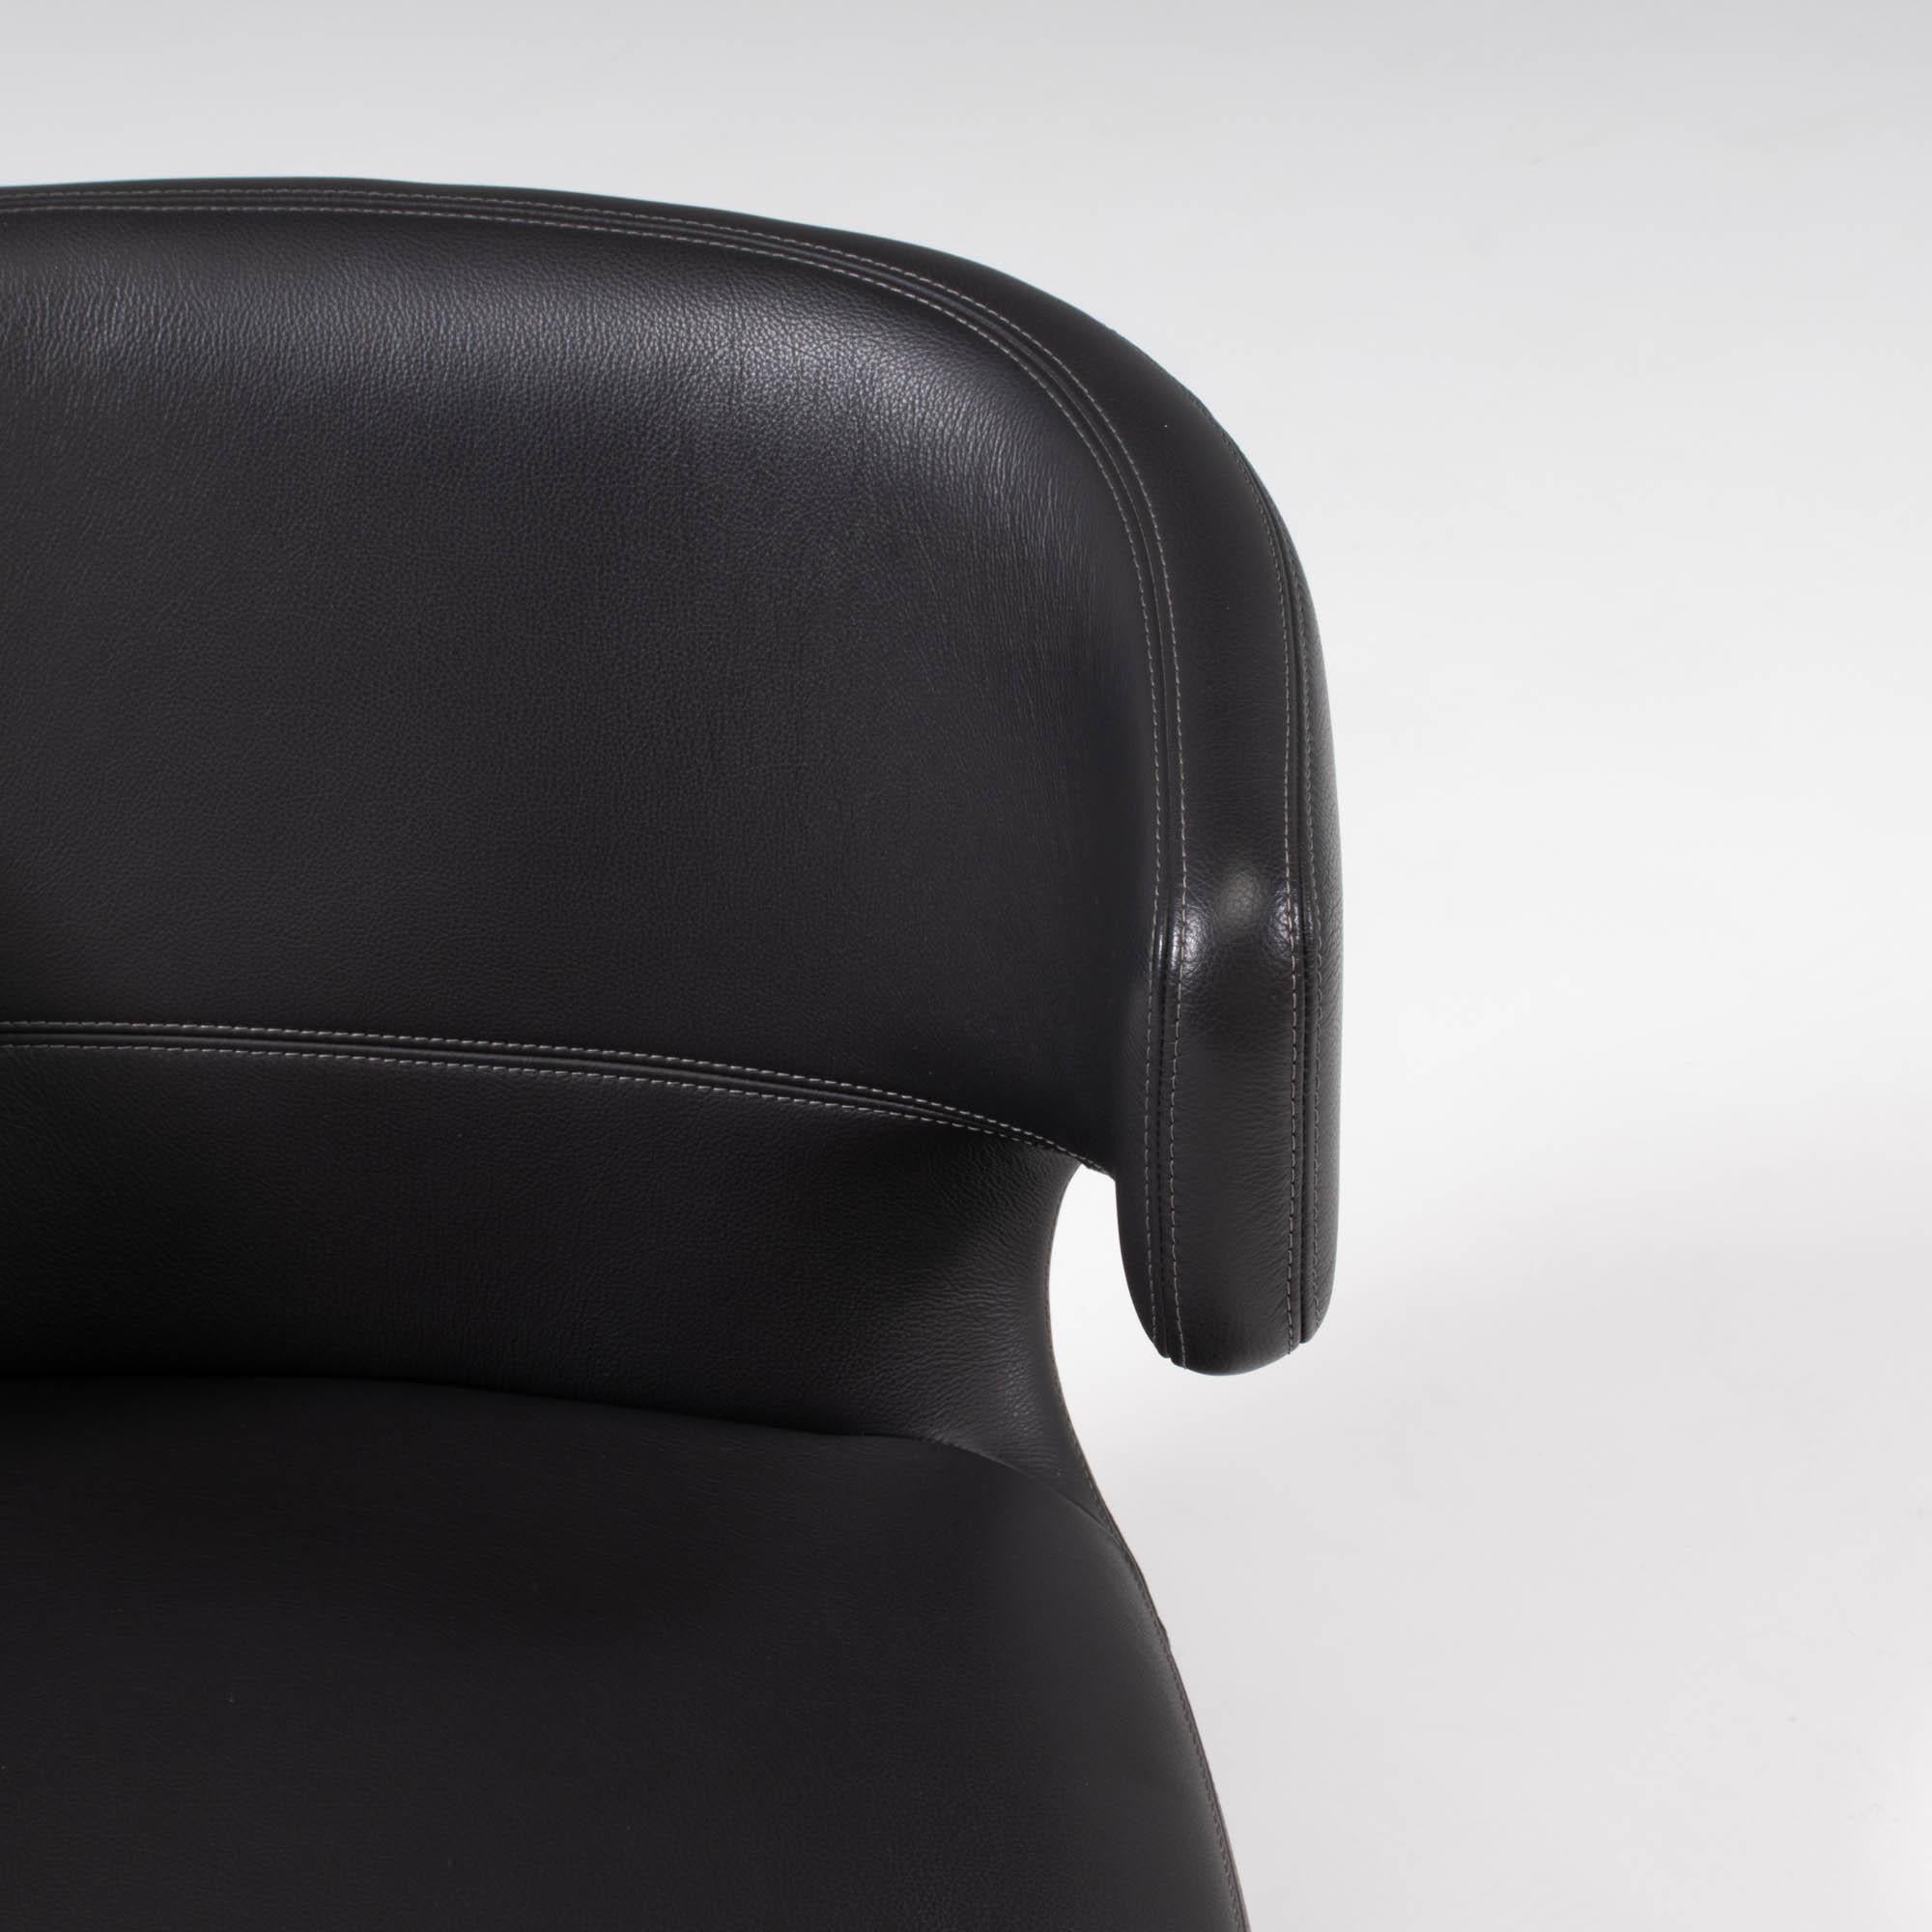 Vitra by Antonio Citterio Petit Repos Leather Chair 4